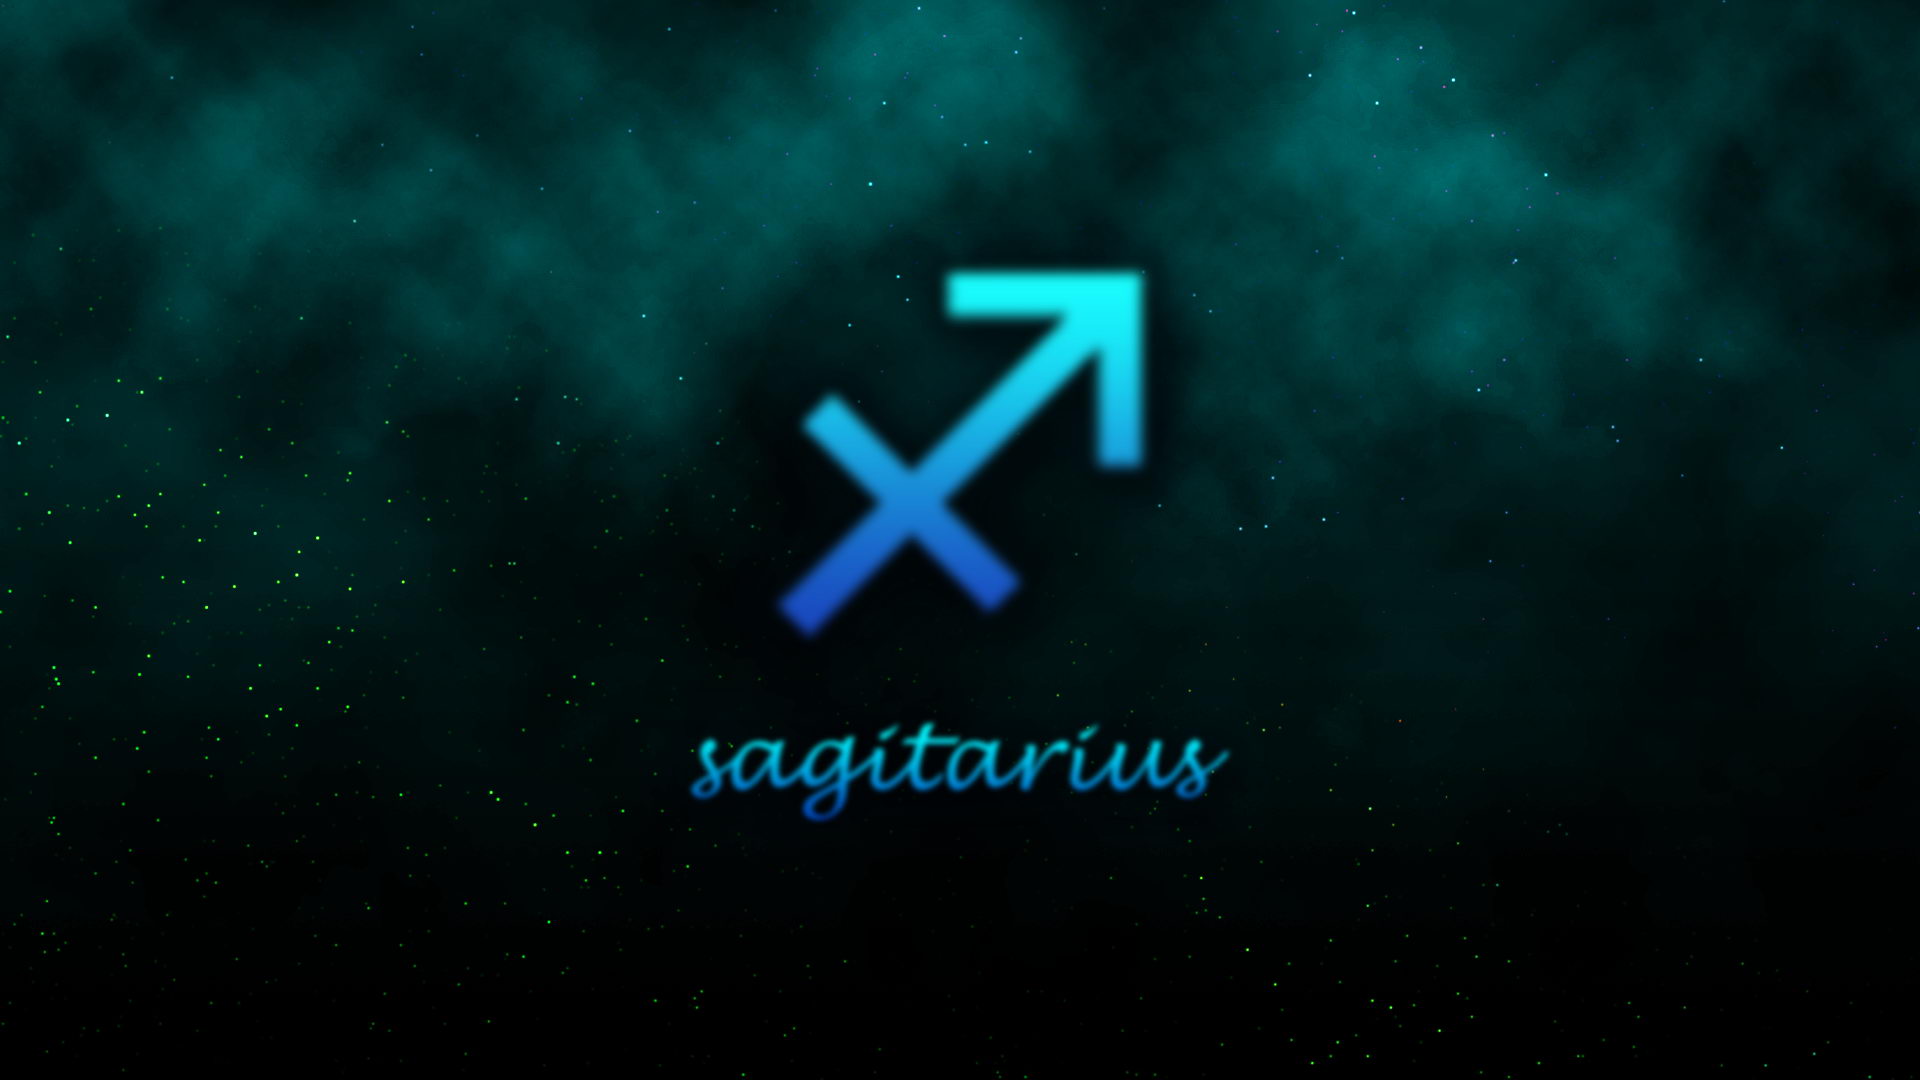 Sagittarius Wallpaper 3d For Your